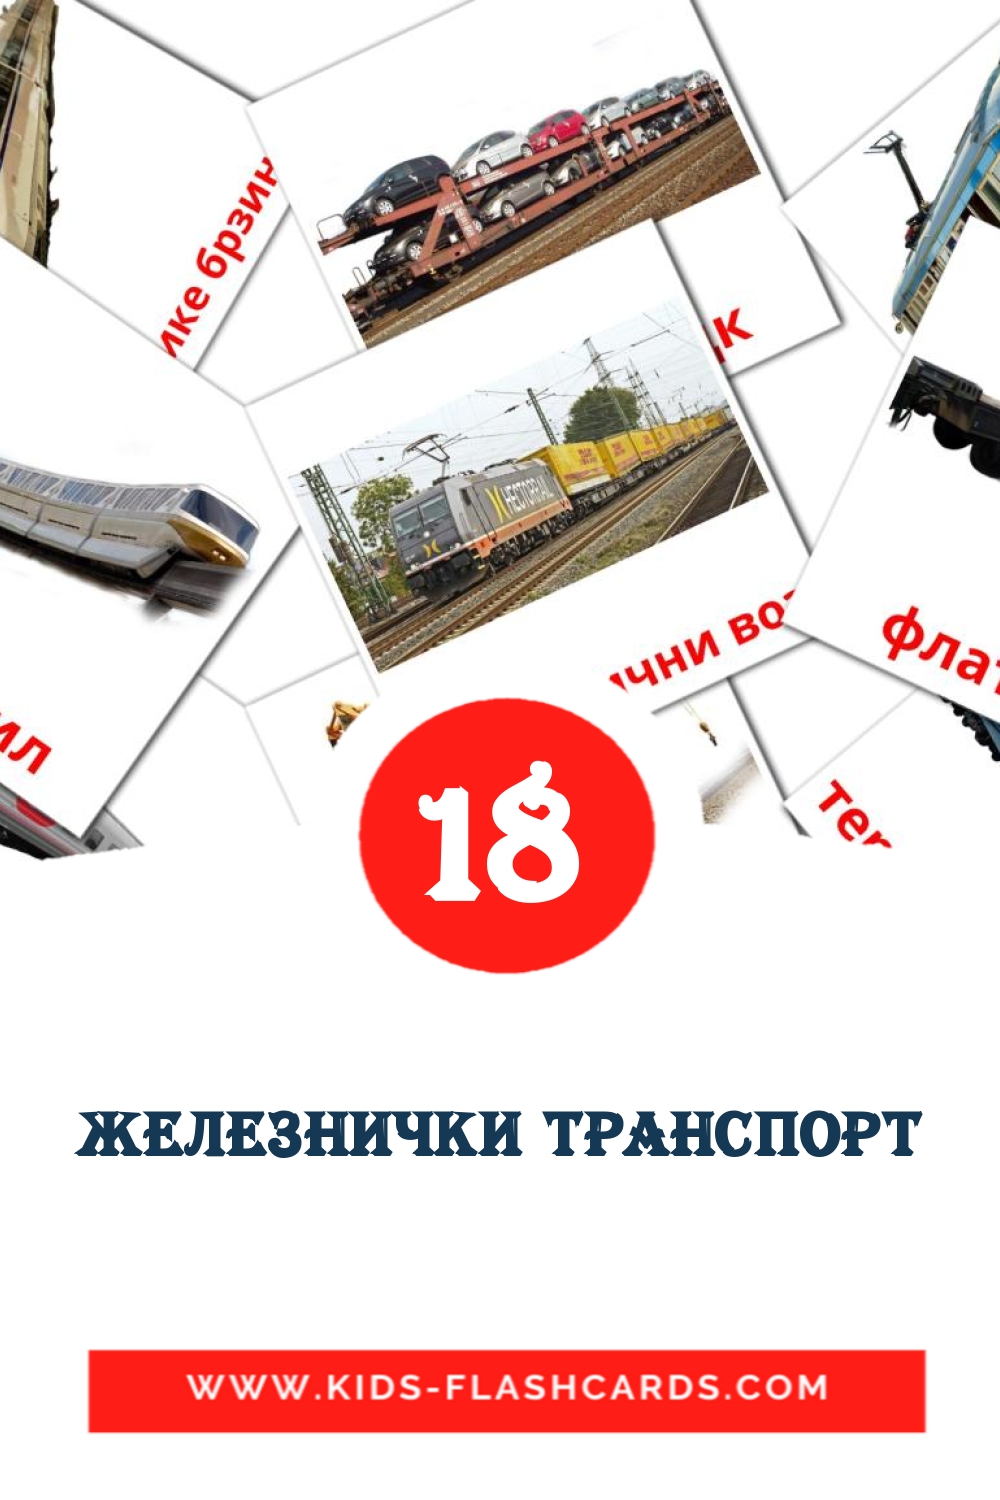 Железнички транспорт на сербский(кириллица) для Детского Сада (18 карточек)